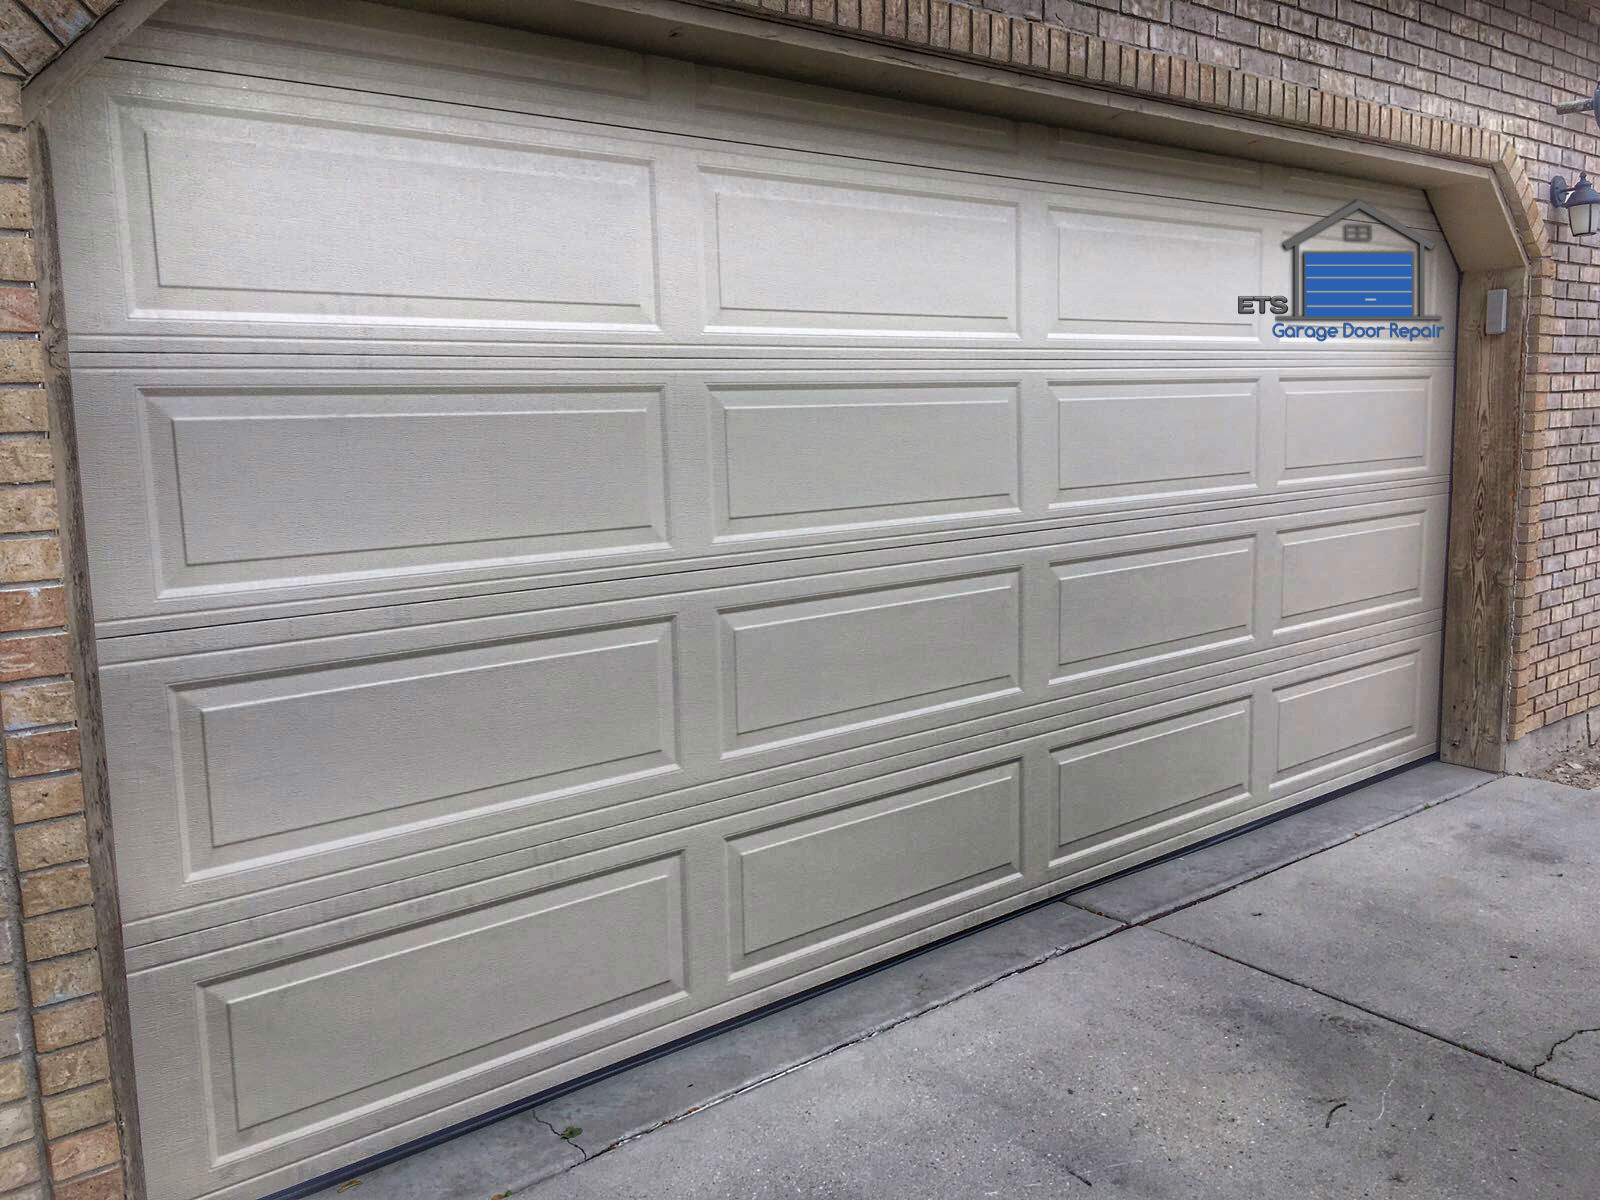 ETS Garage Door Repair Of Sherwood - Garage Door Repair & Installation Services3